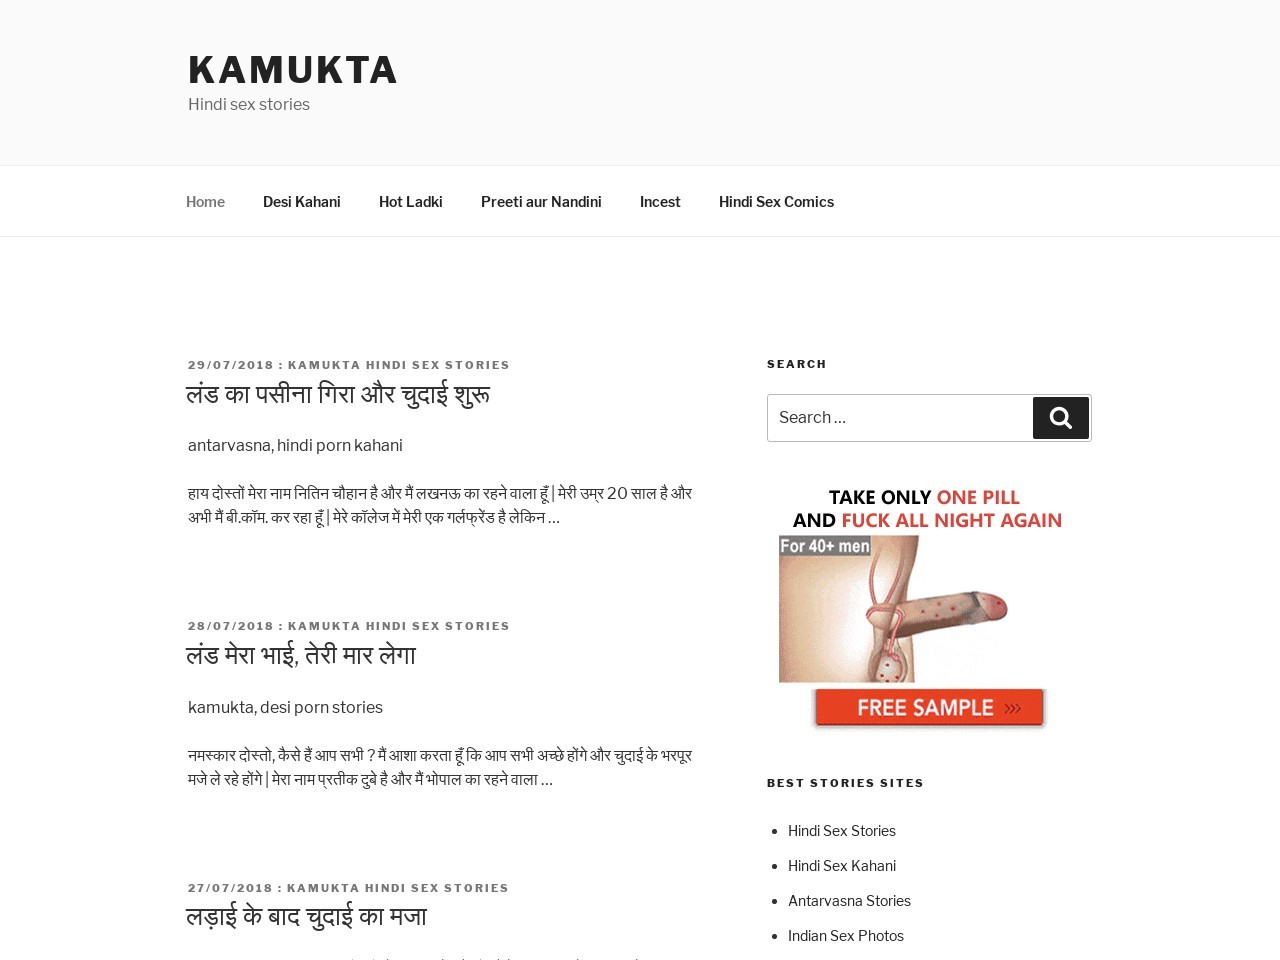 1280px x 960px - Kamukta Stories & 20+ Indian Sex Stories Sites Like kamuktastories.com